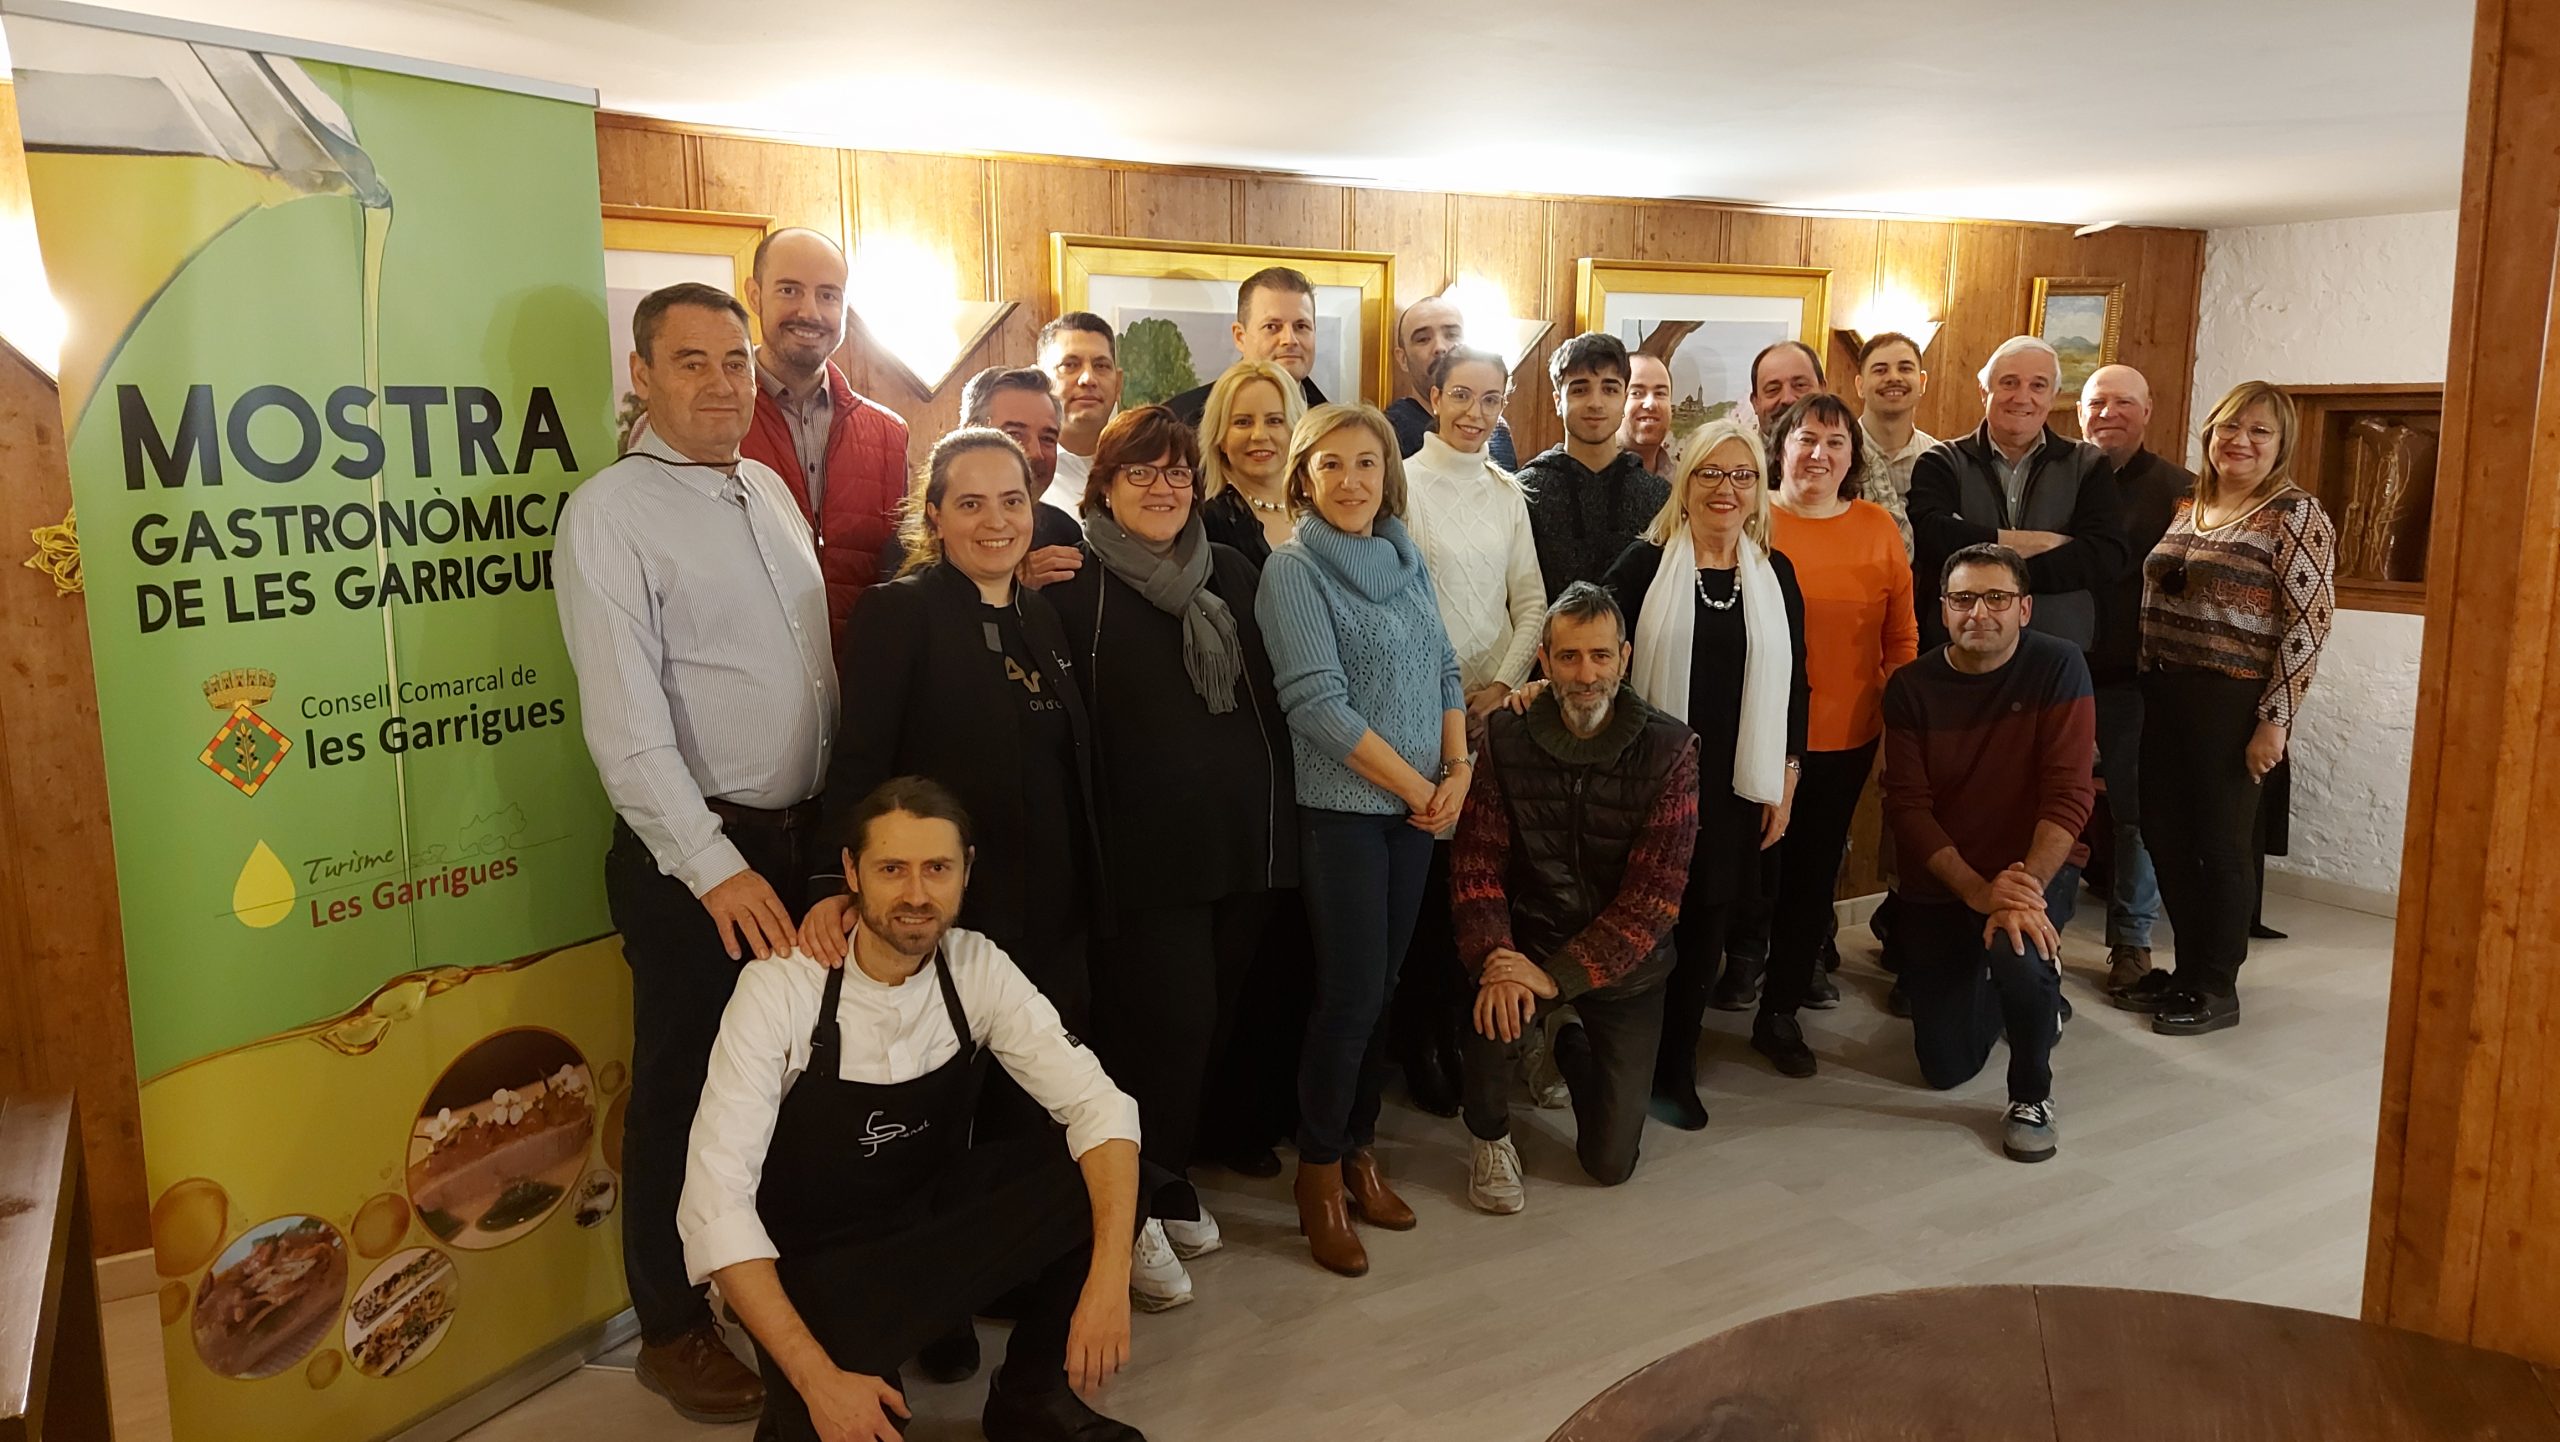 La Mostra Gastronòmica de les Garrigues clou la 28a edició amb 1.500 menús servits